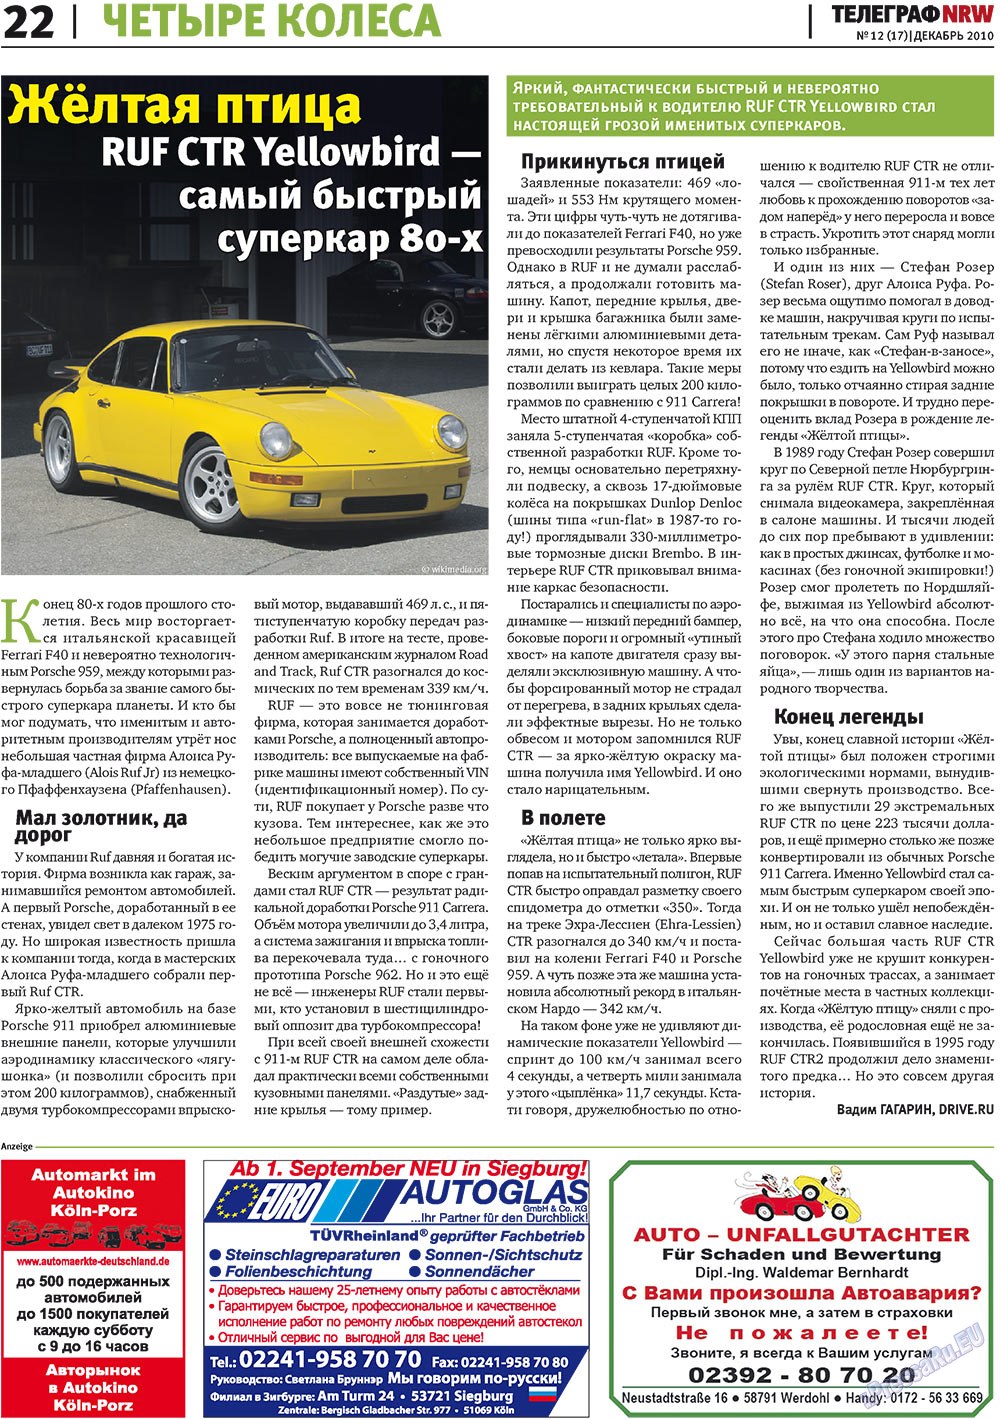 Телеграф NRW (газета). 2010 год, номер 12, стр. 22